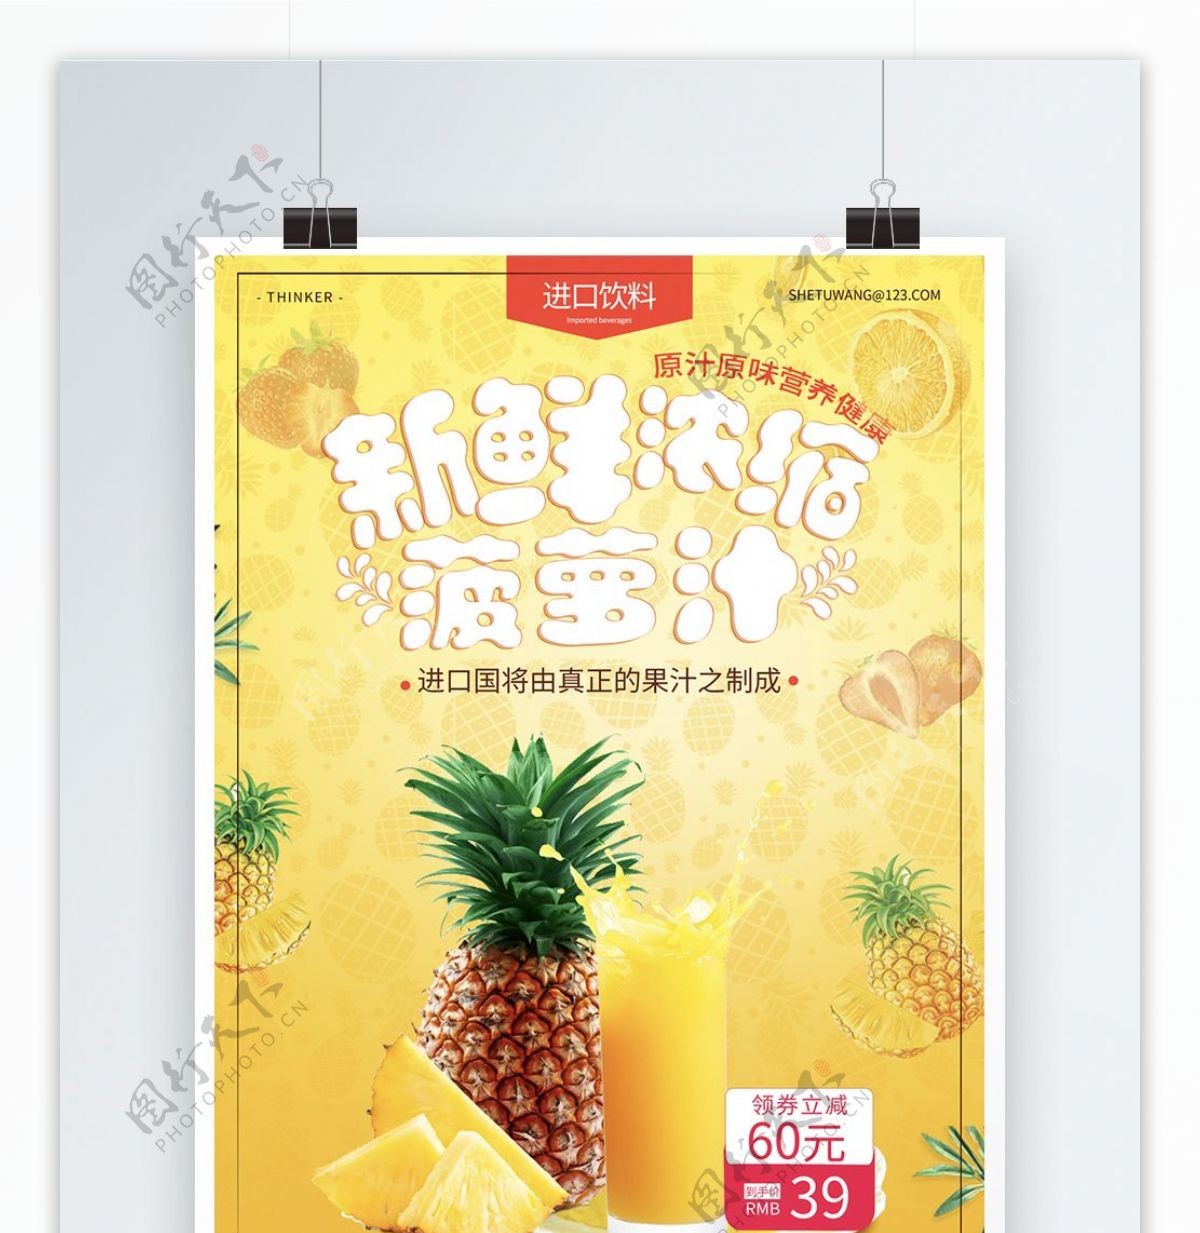 夏季果汁饮品海报